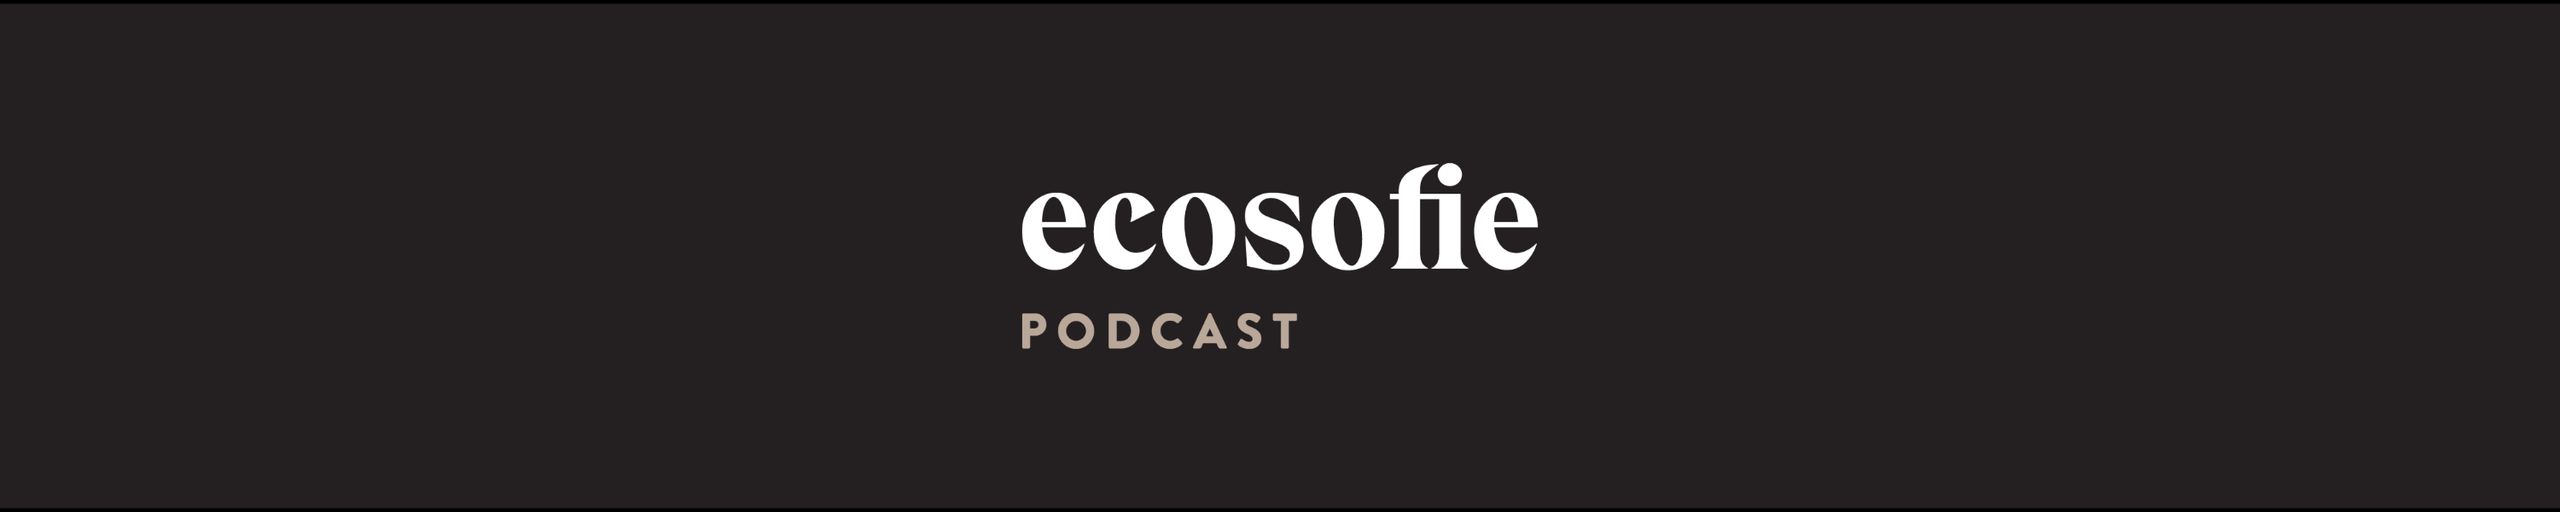 Ecosofie Podcast